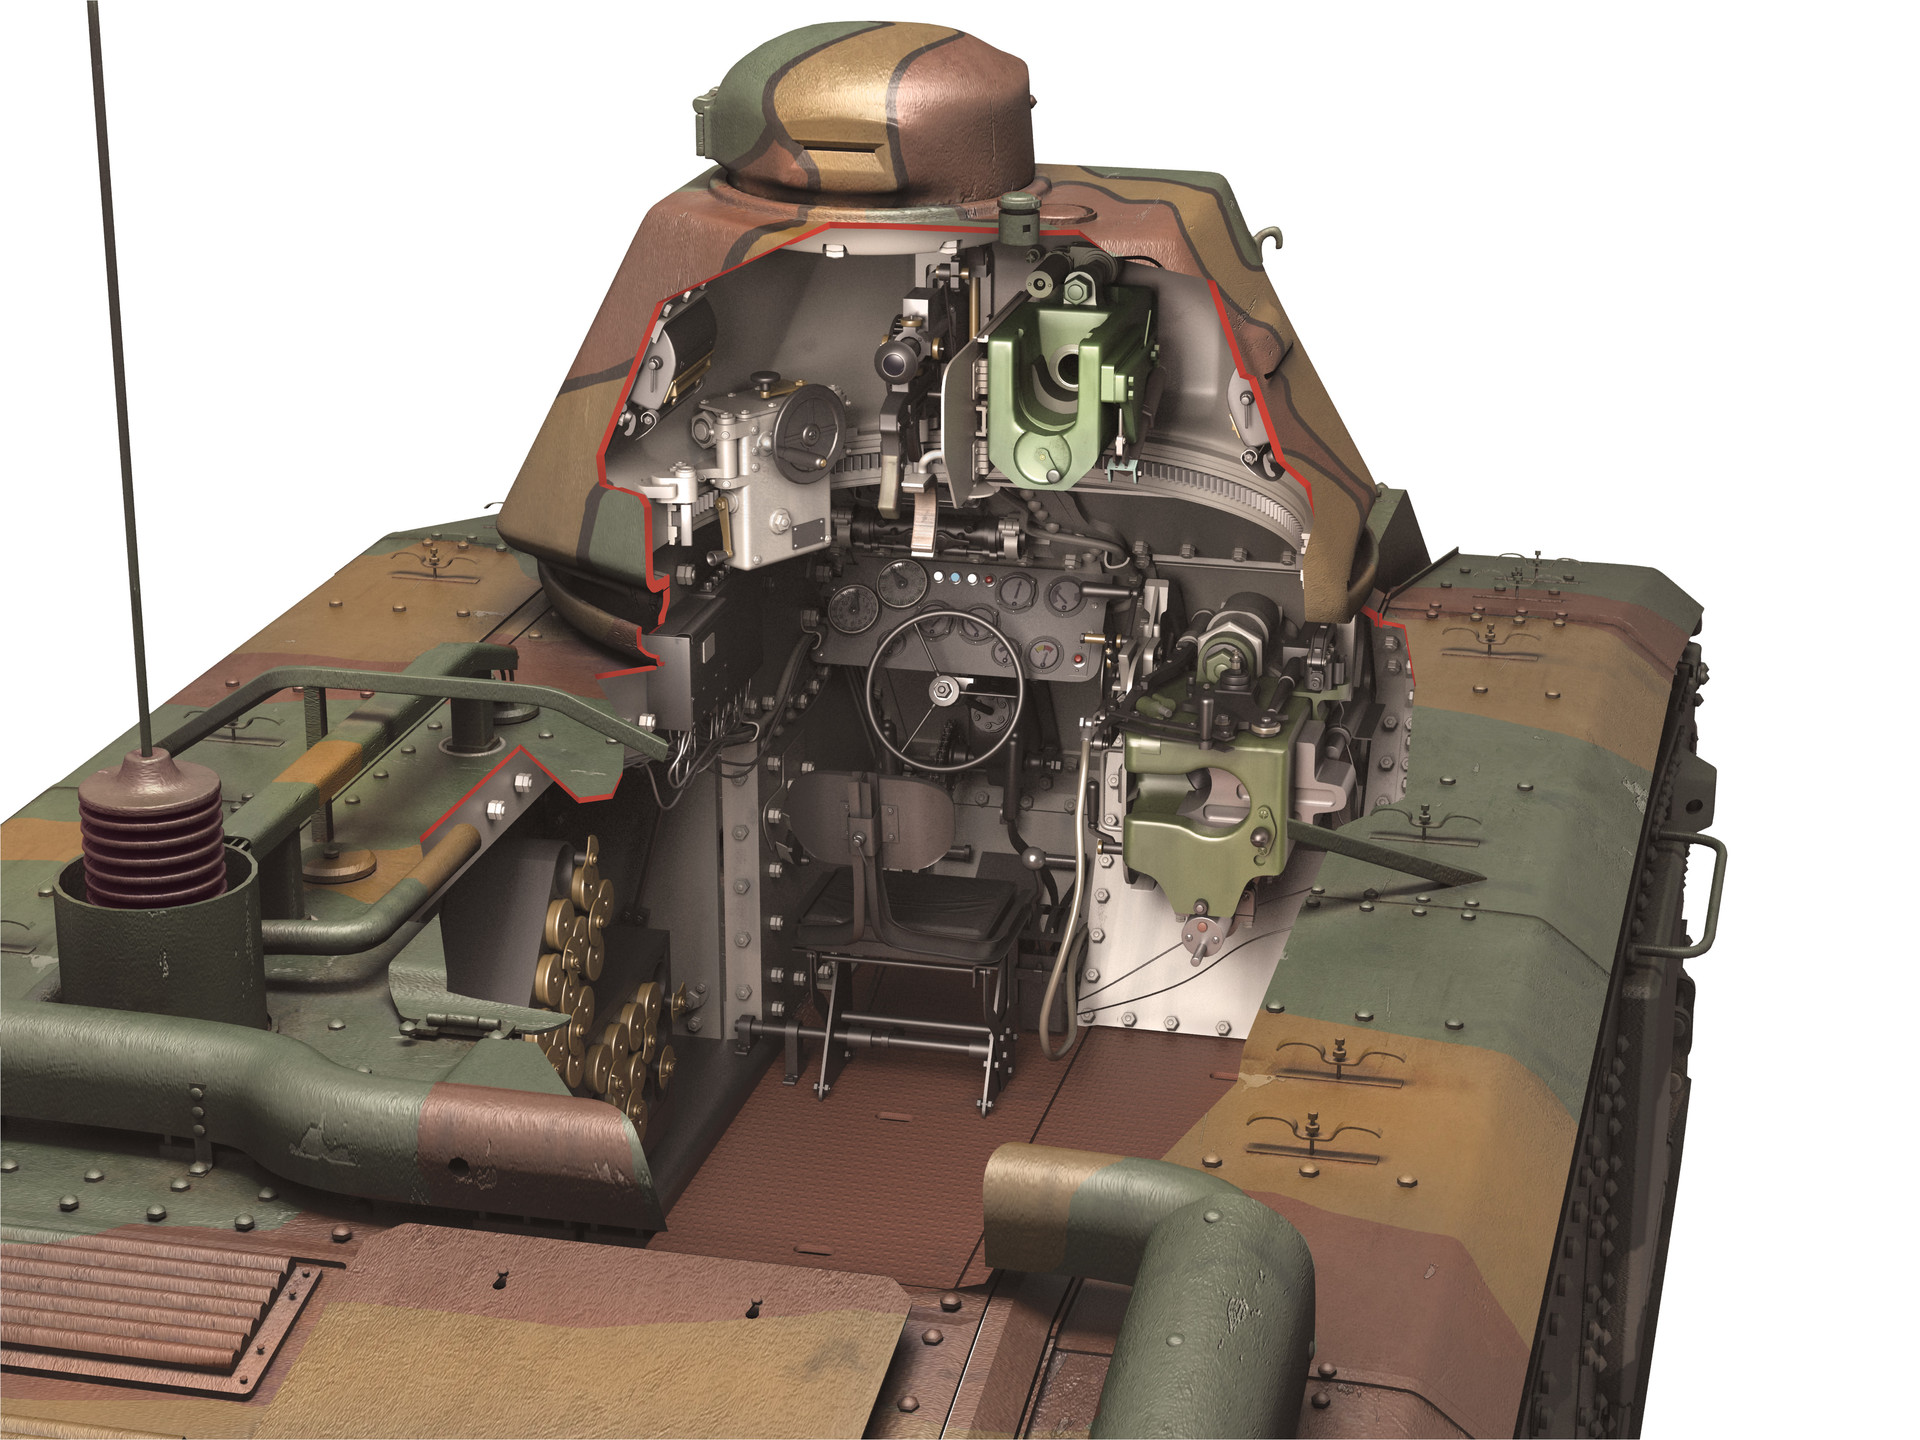 Char B1 heavy tank - Char de Bataille, a "battle tank" fighting e...